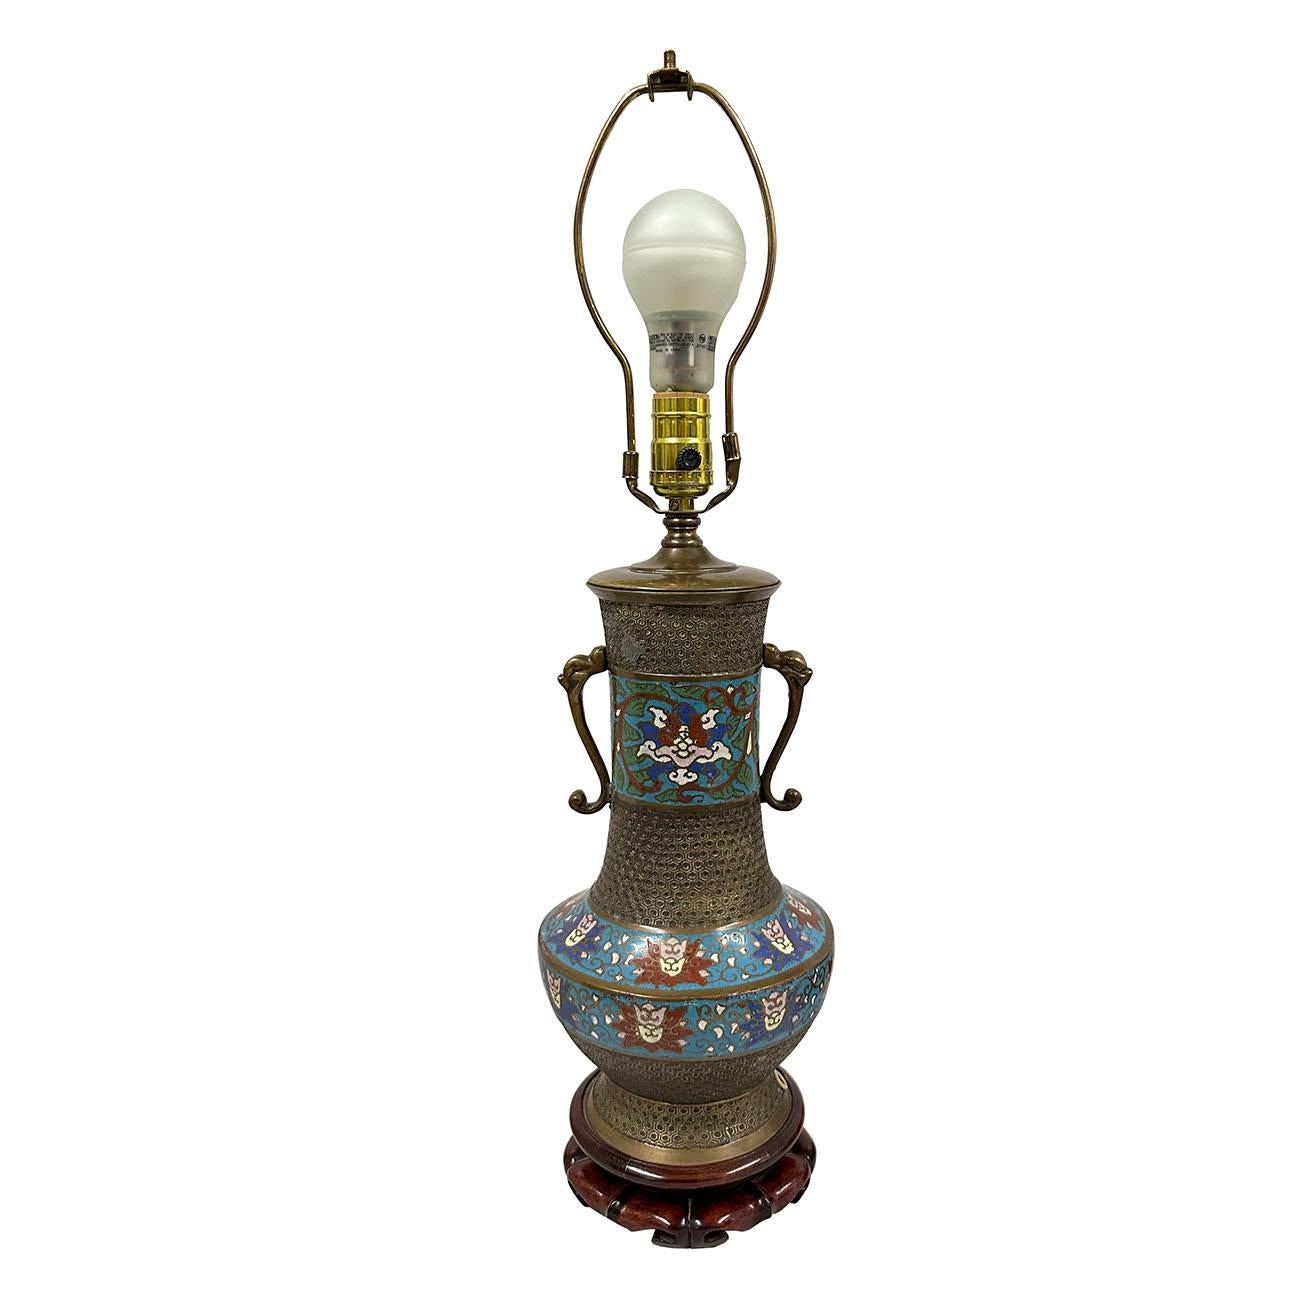 Lampe ancienne japonaise cloisonnée, vers 1910, avec incrustation d'émail bleu, rouge et vert sur un vase de forme balustre en laiton, montée comme lampe de table et électrifiée. Tous les cloisonnés sont faits à la main sur la base en laiton doré